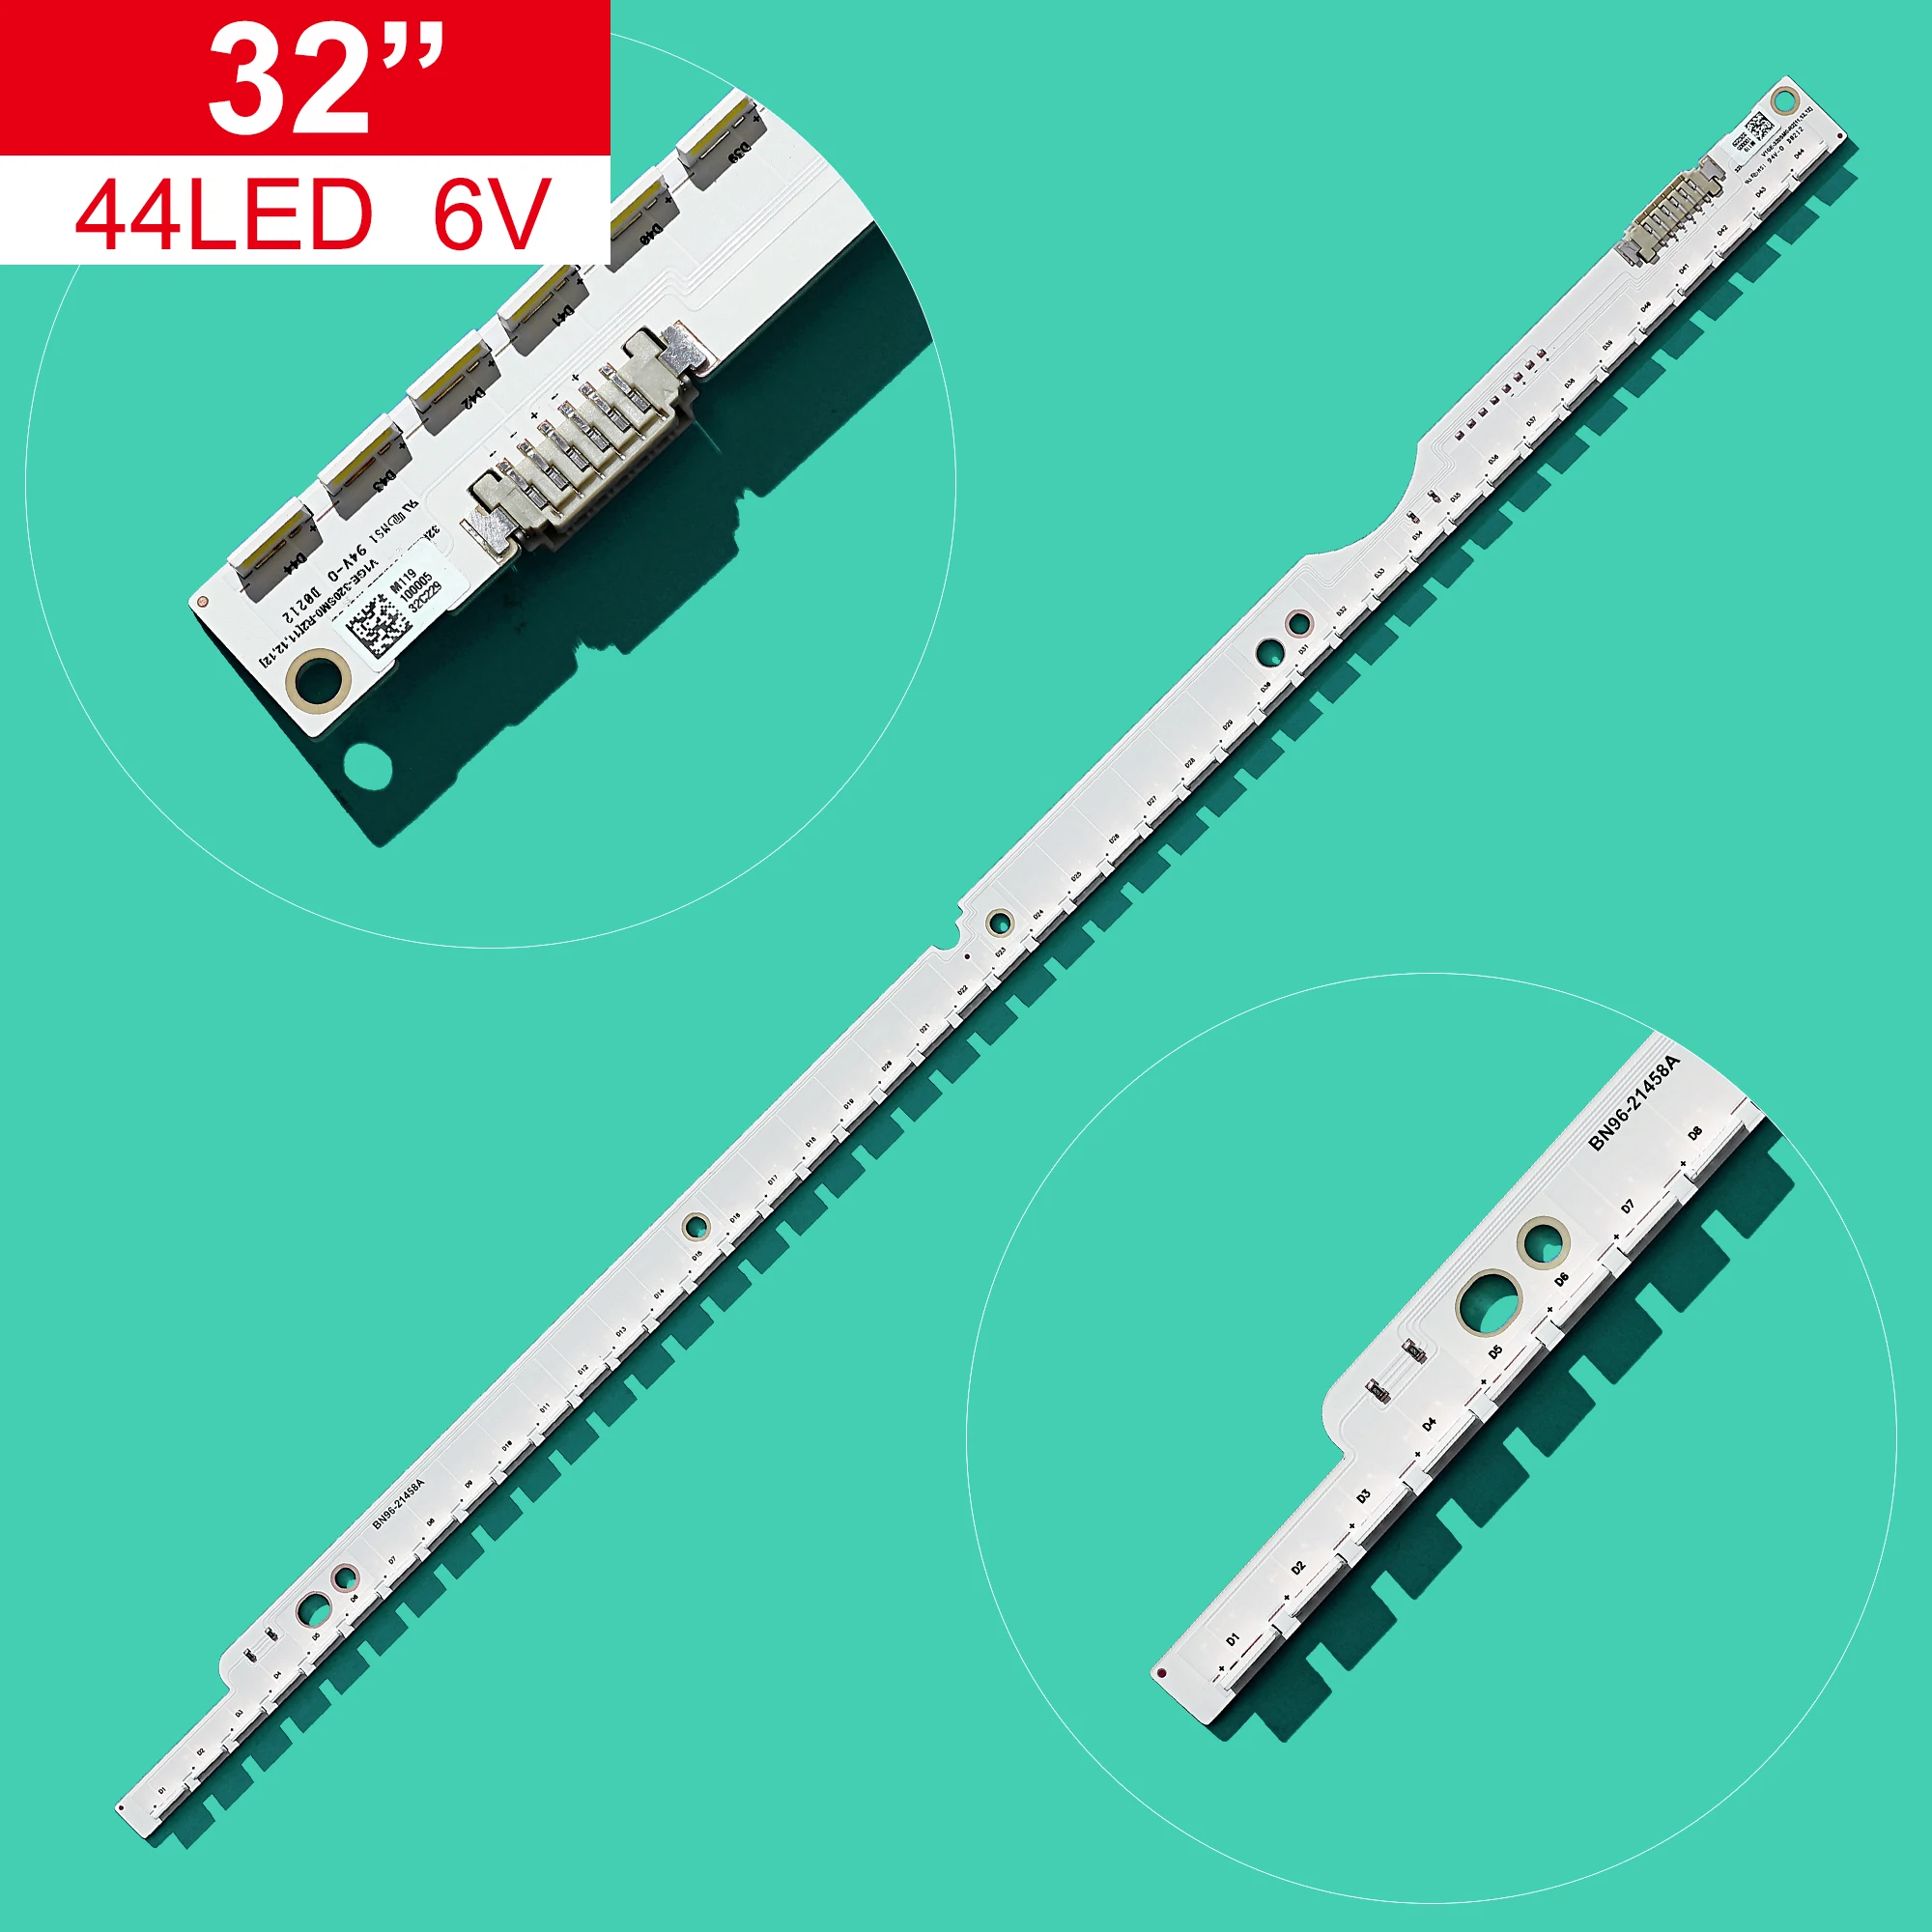 

New 406mm 44LEDs LED Strip for 2012SVS32 7032NNB 44 2D REV1.0 32" TV V1GE-320SM0-R1 UE3a2ES6307 UA32ES5500 UE32ES5530W UE32E